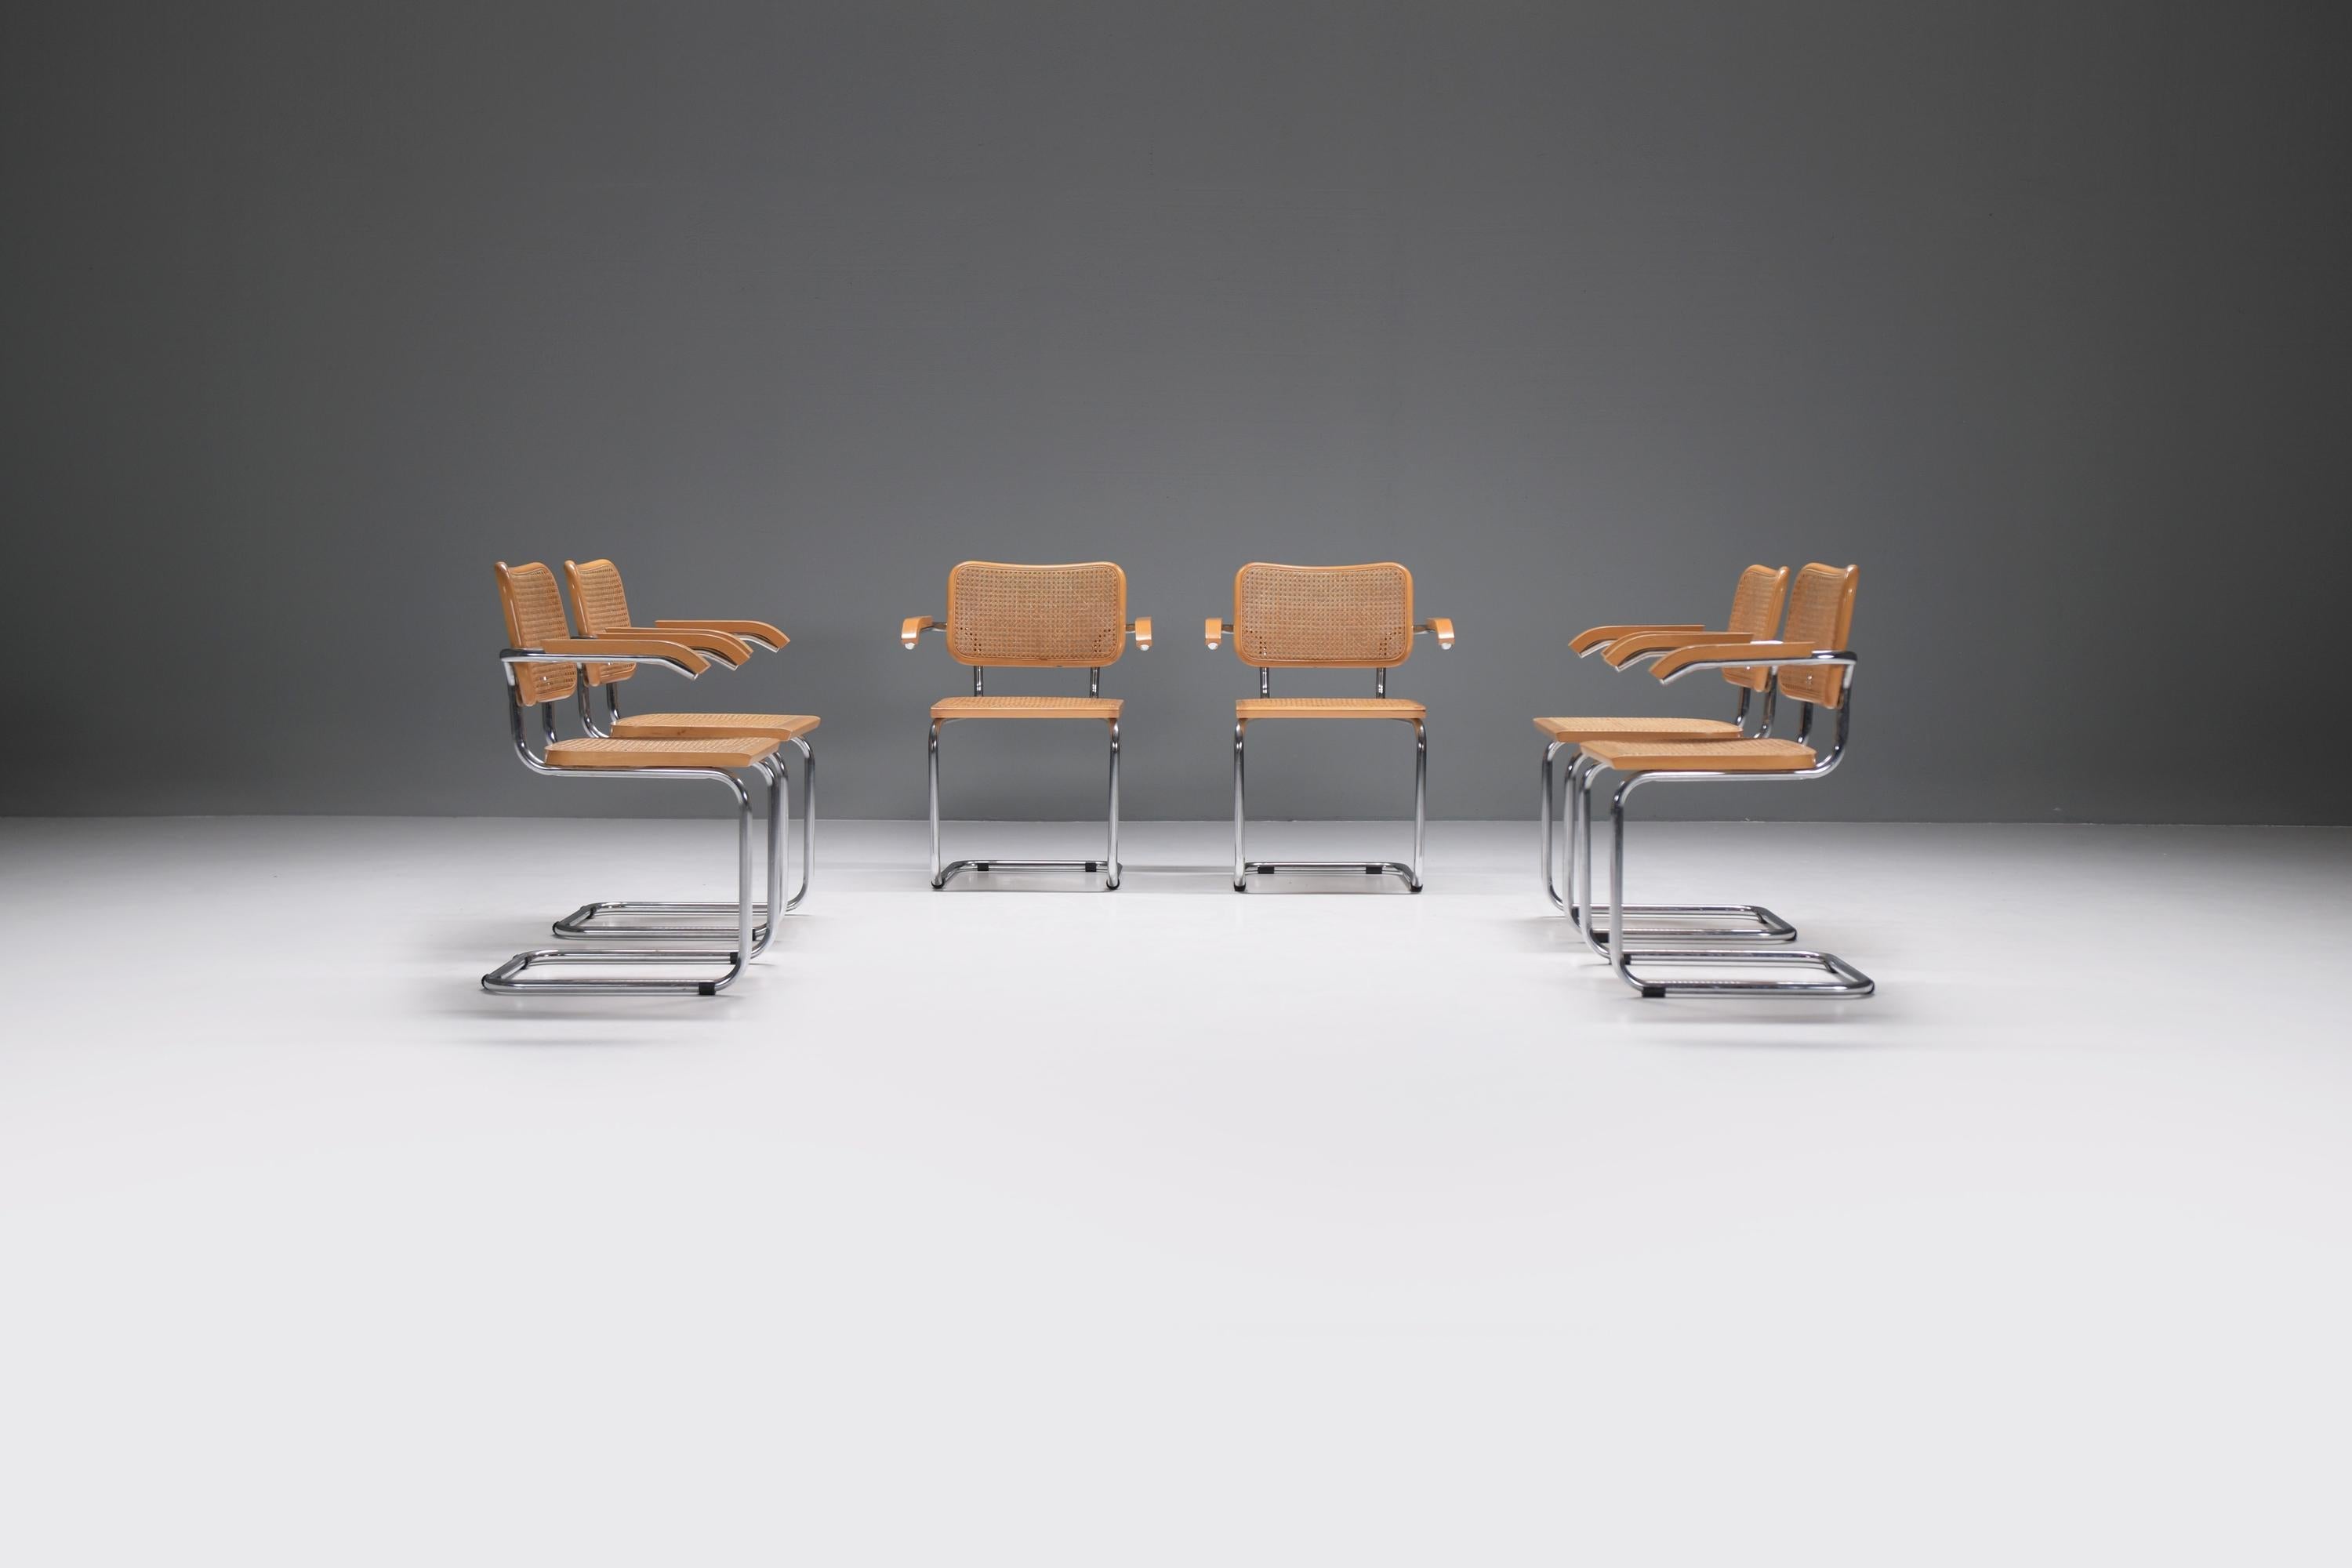 Schönes Sessel-Set mit verchromtem Stahlrohr-Fußkreuz und Sitz und Rückenlehne aus Buchenholz.
Inspiriert von den berühmten Cesca-Stühlen von Marcel Breuer.

Marcel Breuer entwarf 1925 den ersten Stahlrohrstuhl nach dem Vorbild des Rohrrahmens eines